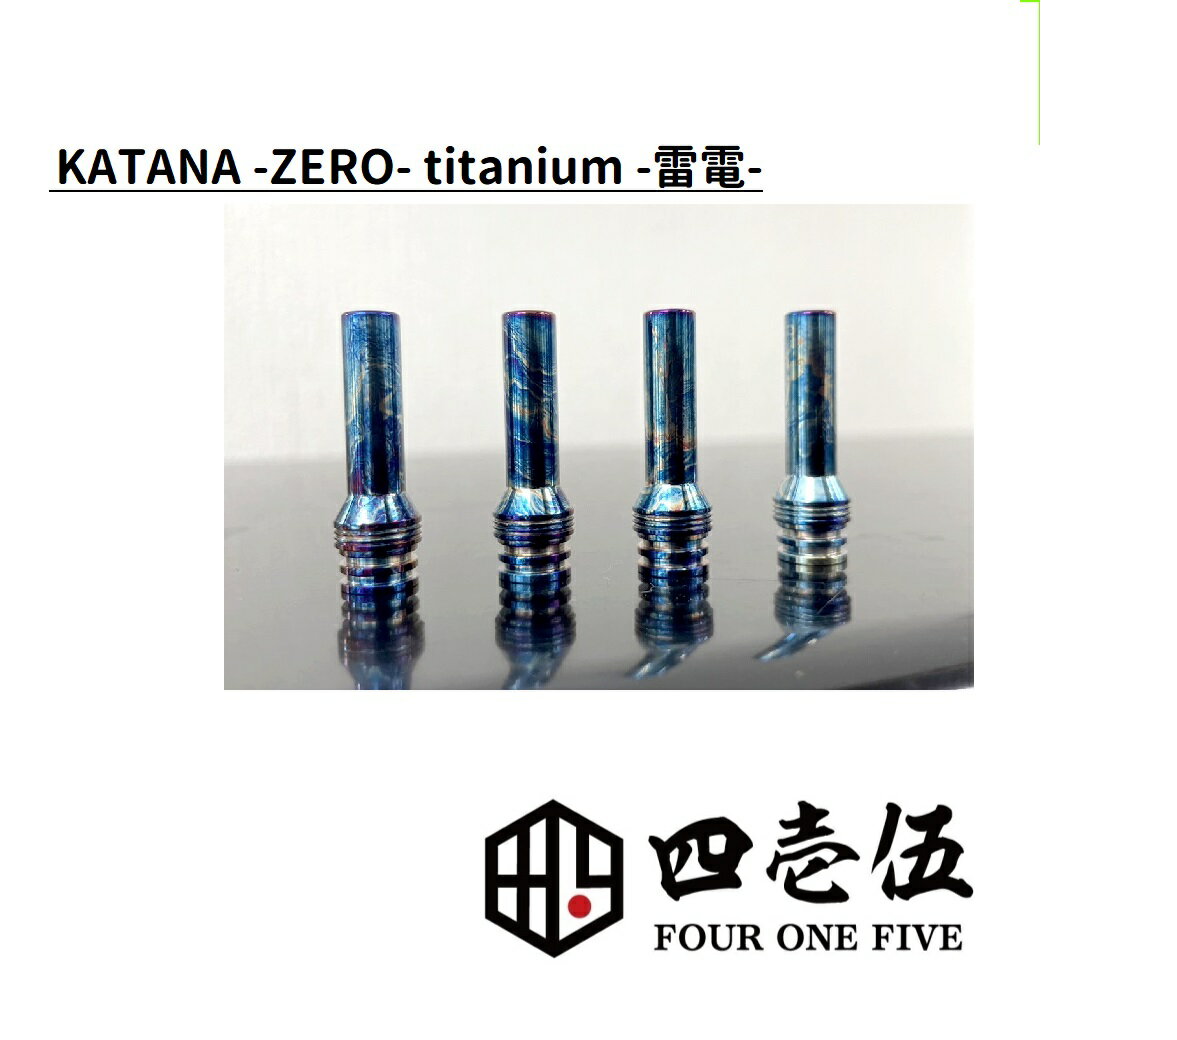 【雷電】KATANA -ZERO- RAIDEN TITANIUM チタン ドリップチップ カタナ 510規格 FOUR ONE FIVE 415 フォーワンファイブ ベイプ 510ドリップチップ マウスピース vape 電子タバコ オフィスエッジ [R-100]